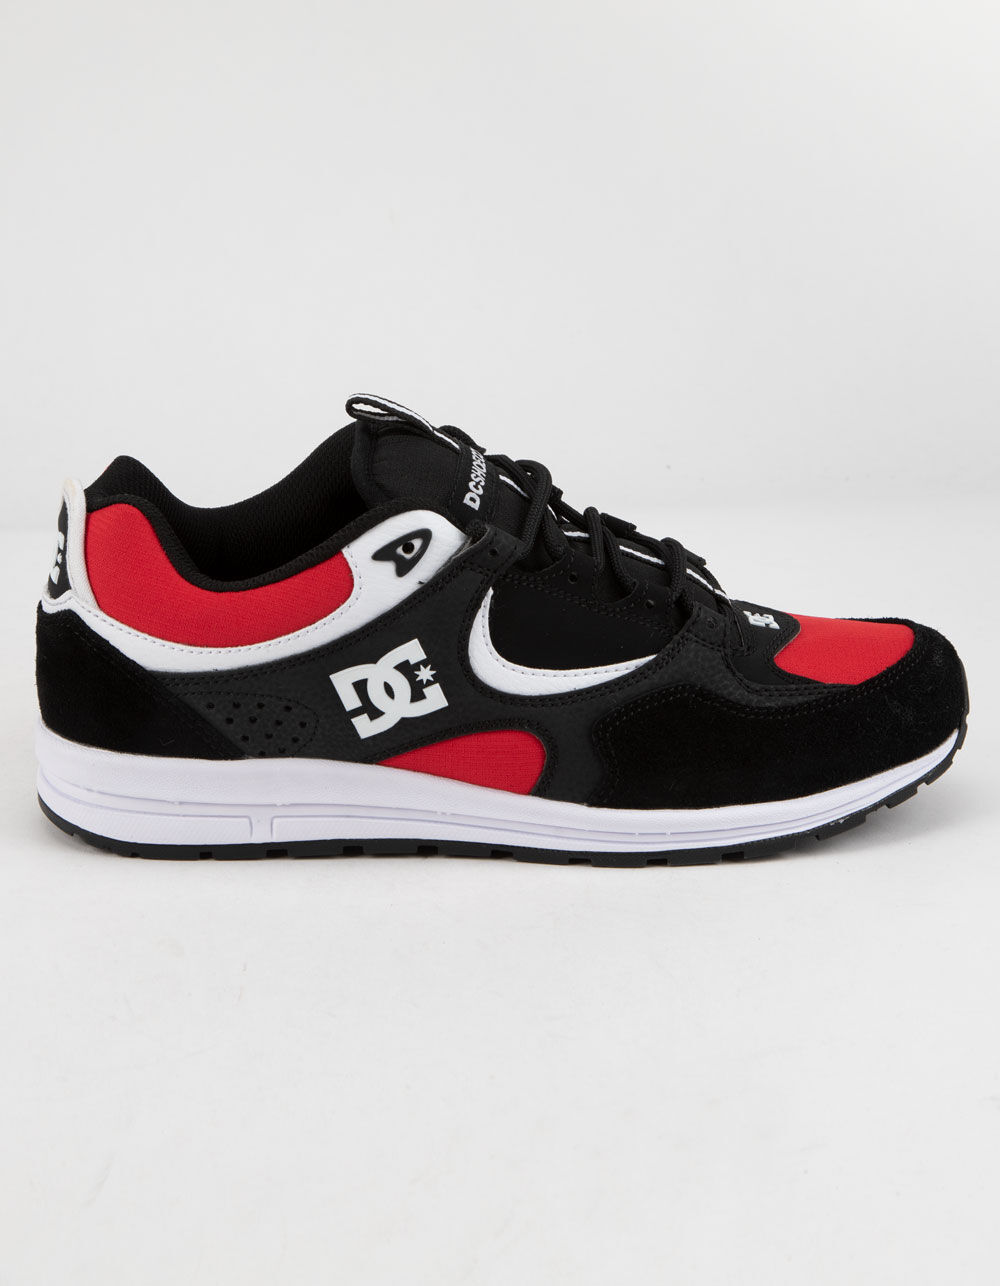 DC Kalis Lite Black/Red Shoe 